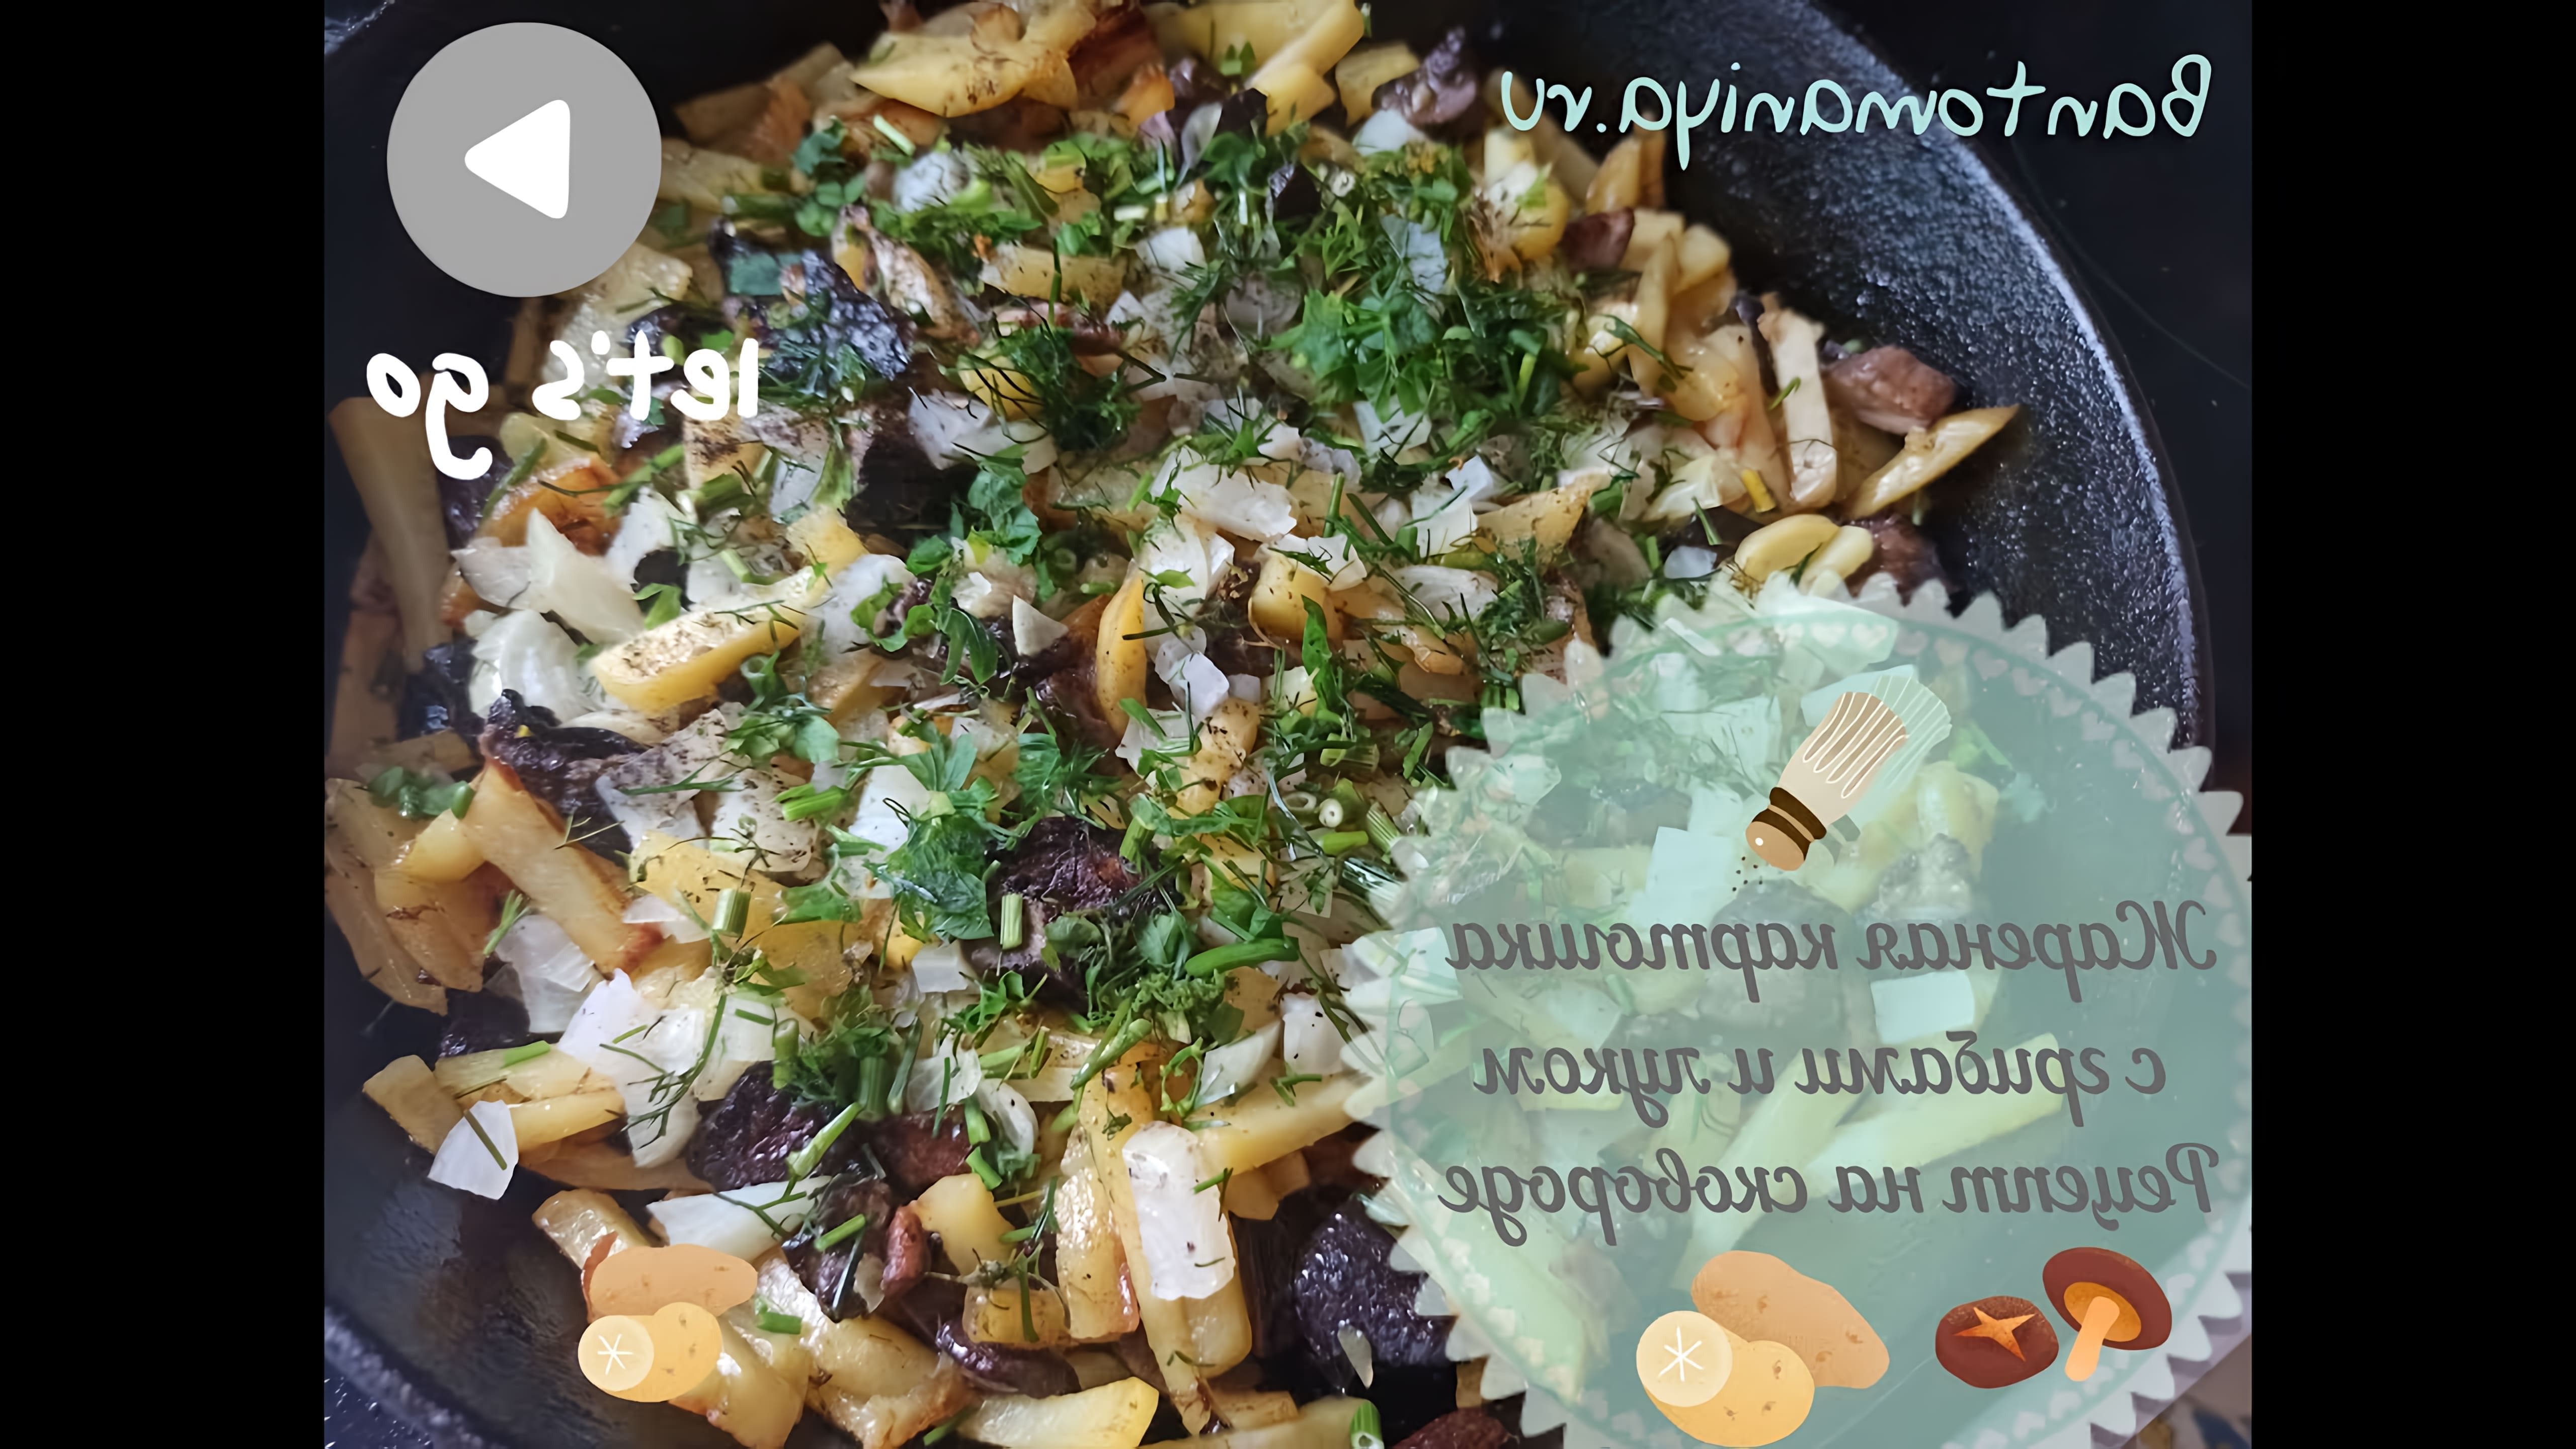 В этом видео демонстрируется процесс приготовления жареной картошки с грибами и луком на сковороде